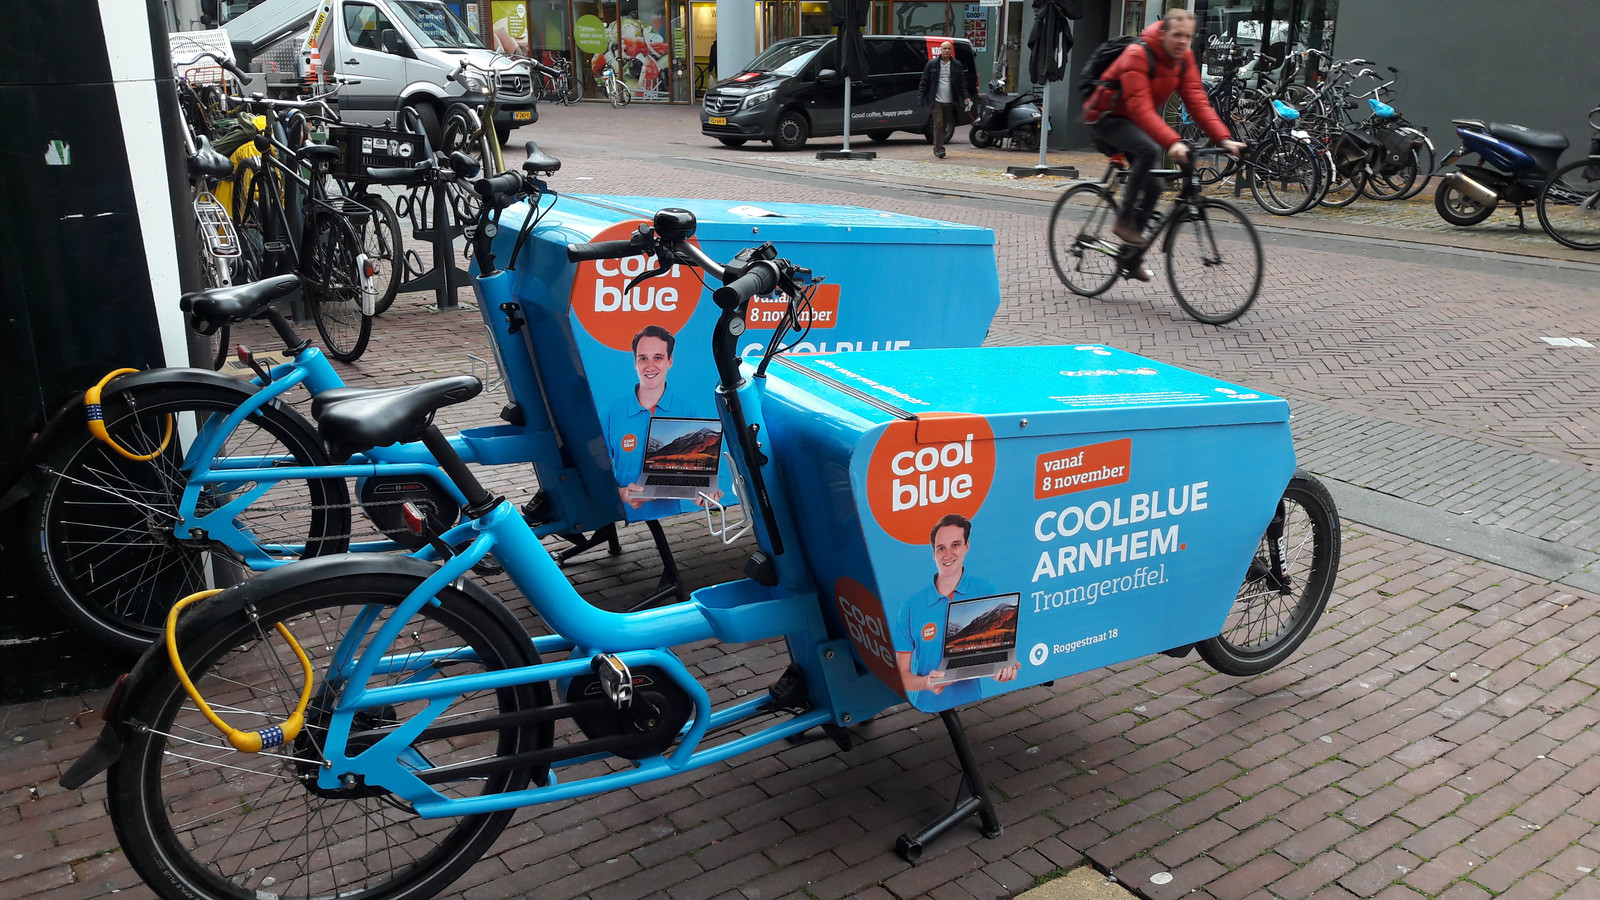 accent Snel Minder Coolblue opent vrijdag winkel in binnenstad van Arnhem | Foto |  gelderlander.nl